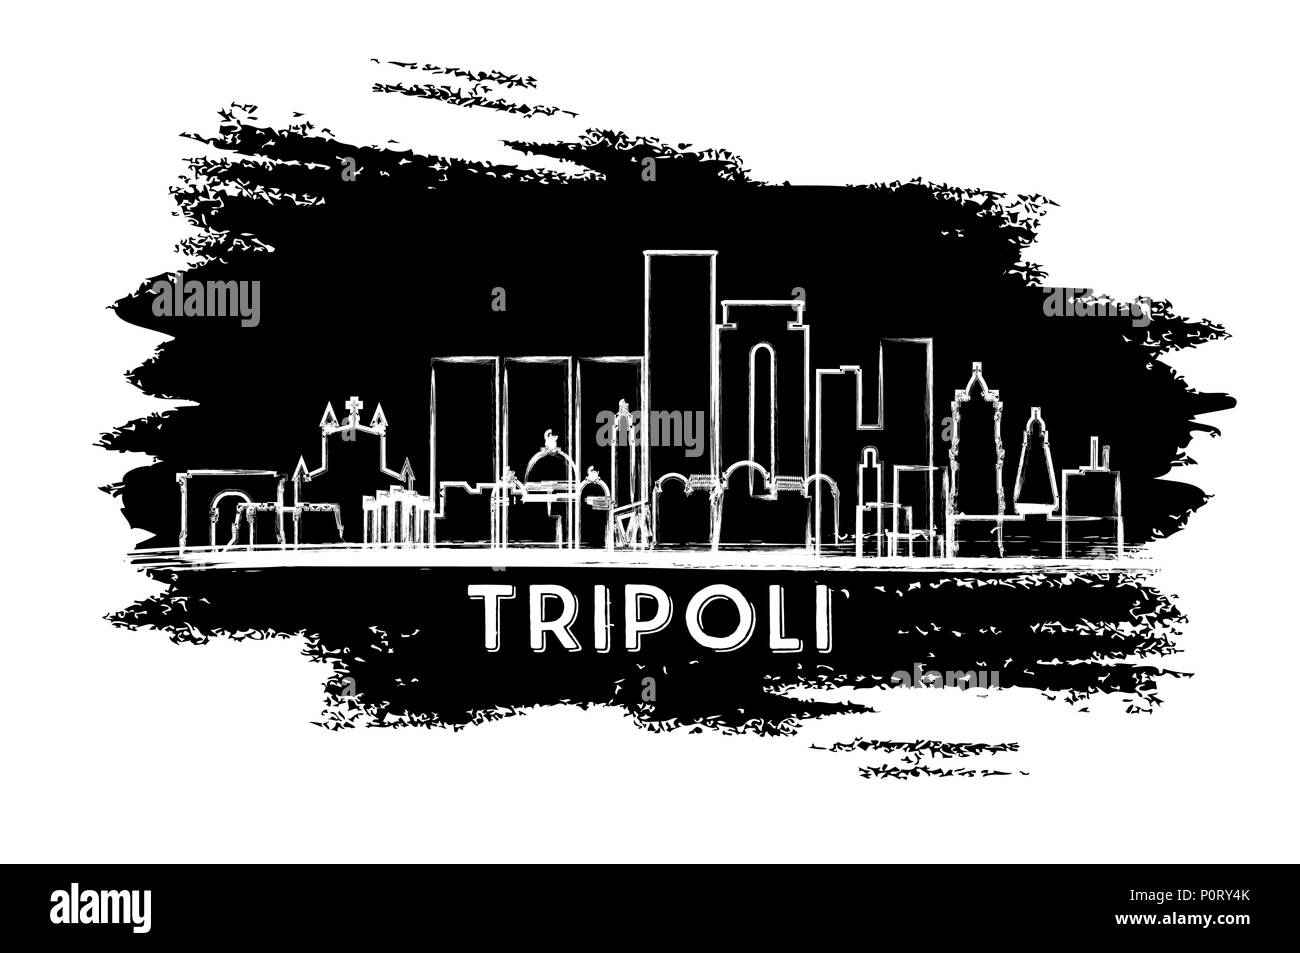 La Libye Tripoli City Skyline Silhouette. Croquis dessinés à la main. Les voyages d'affaires et tourisme Concept avec l'architecture historique. Vector Illustration. Tripoli Illustration de Vecteur